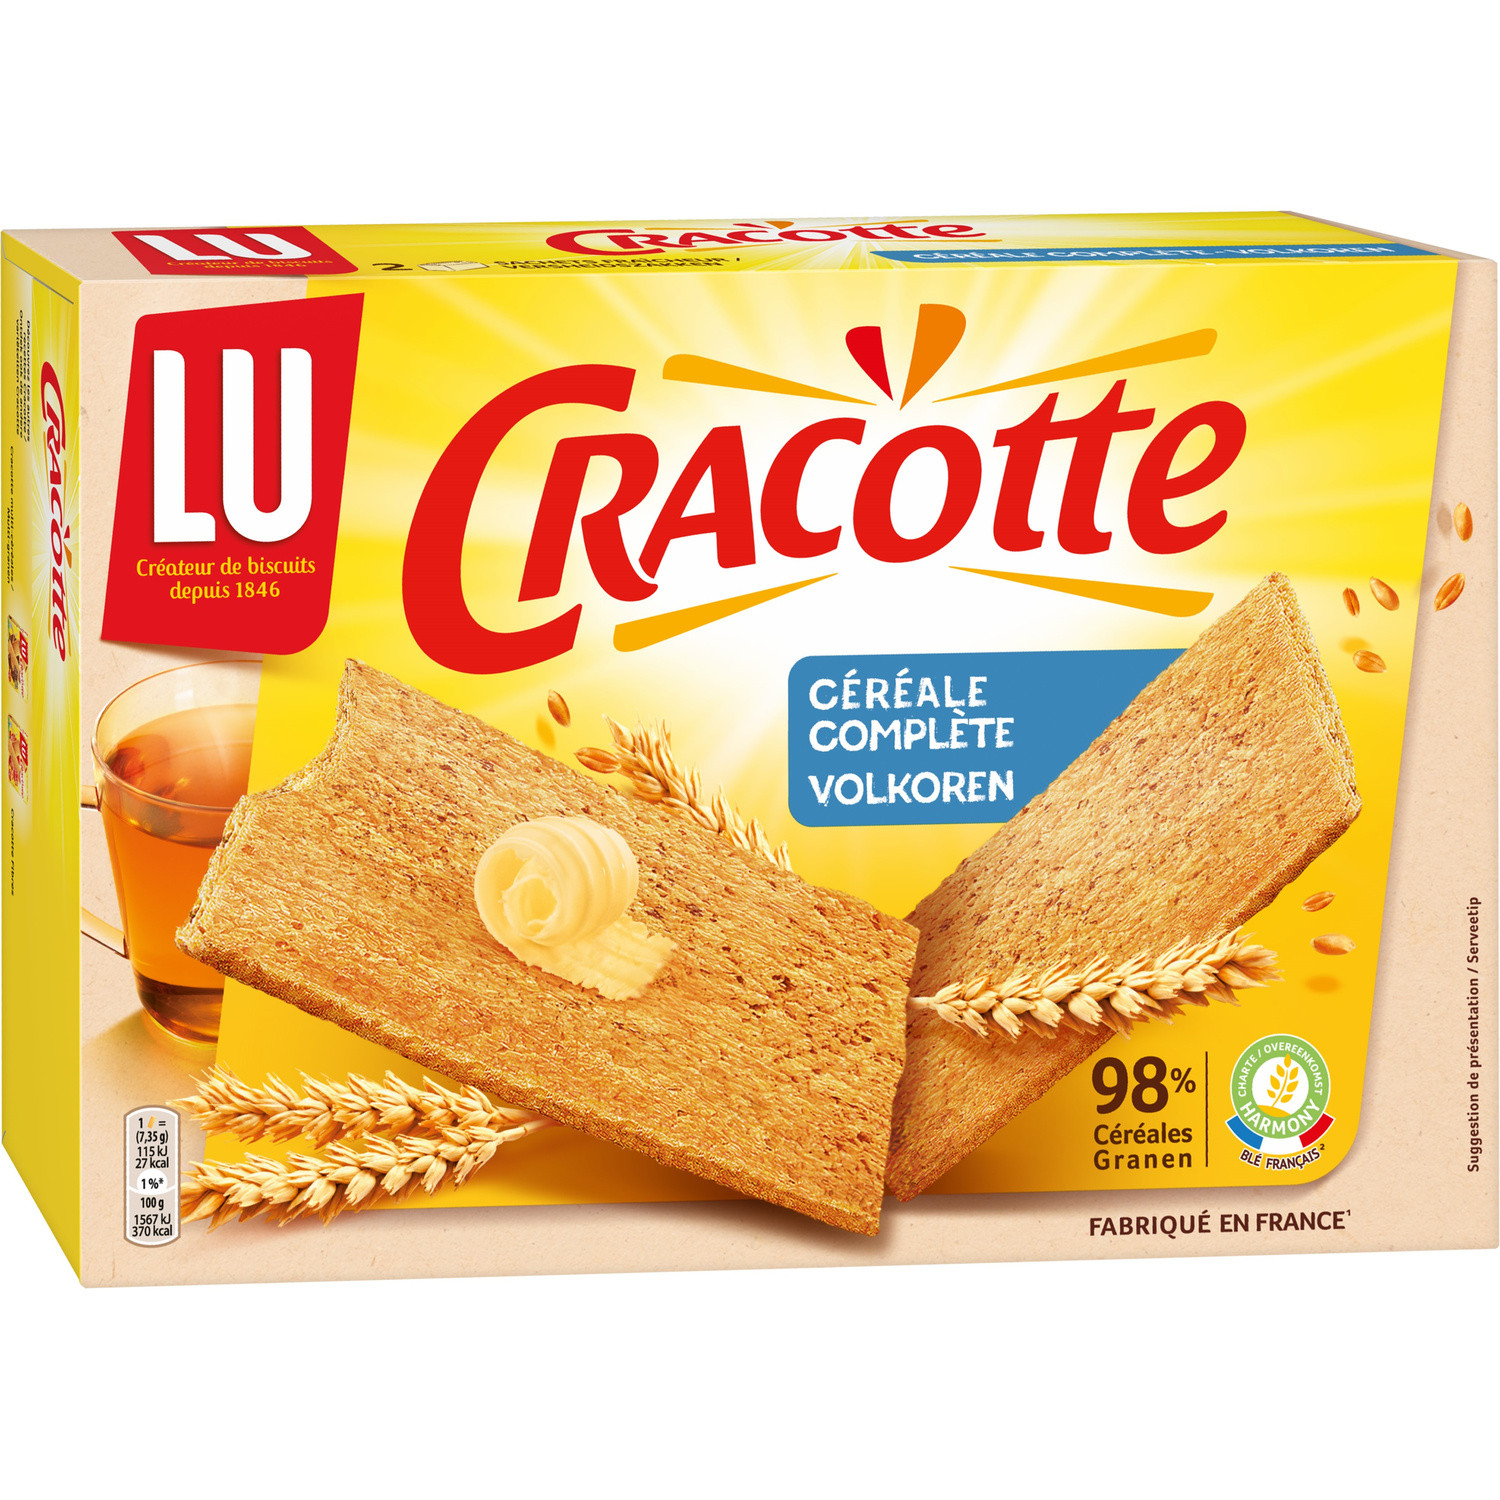 LU Cracotte - Fourrées choco-noisette (216g) commandez en ligne